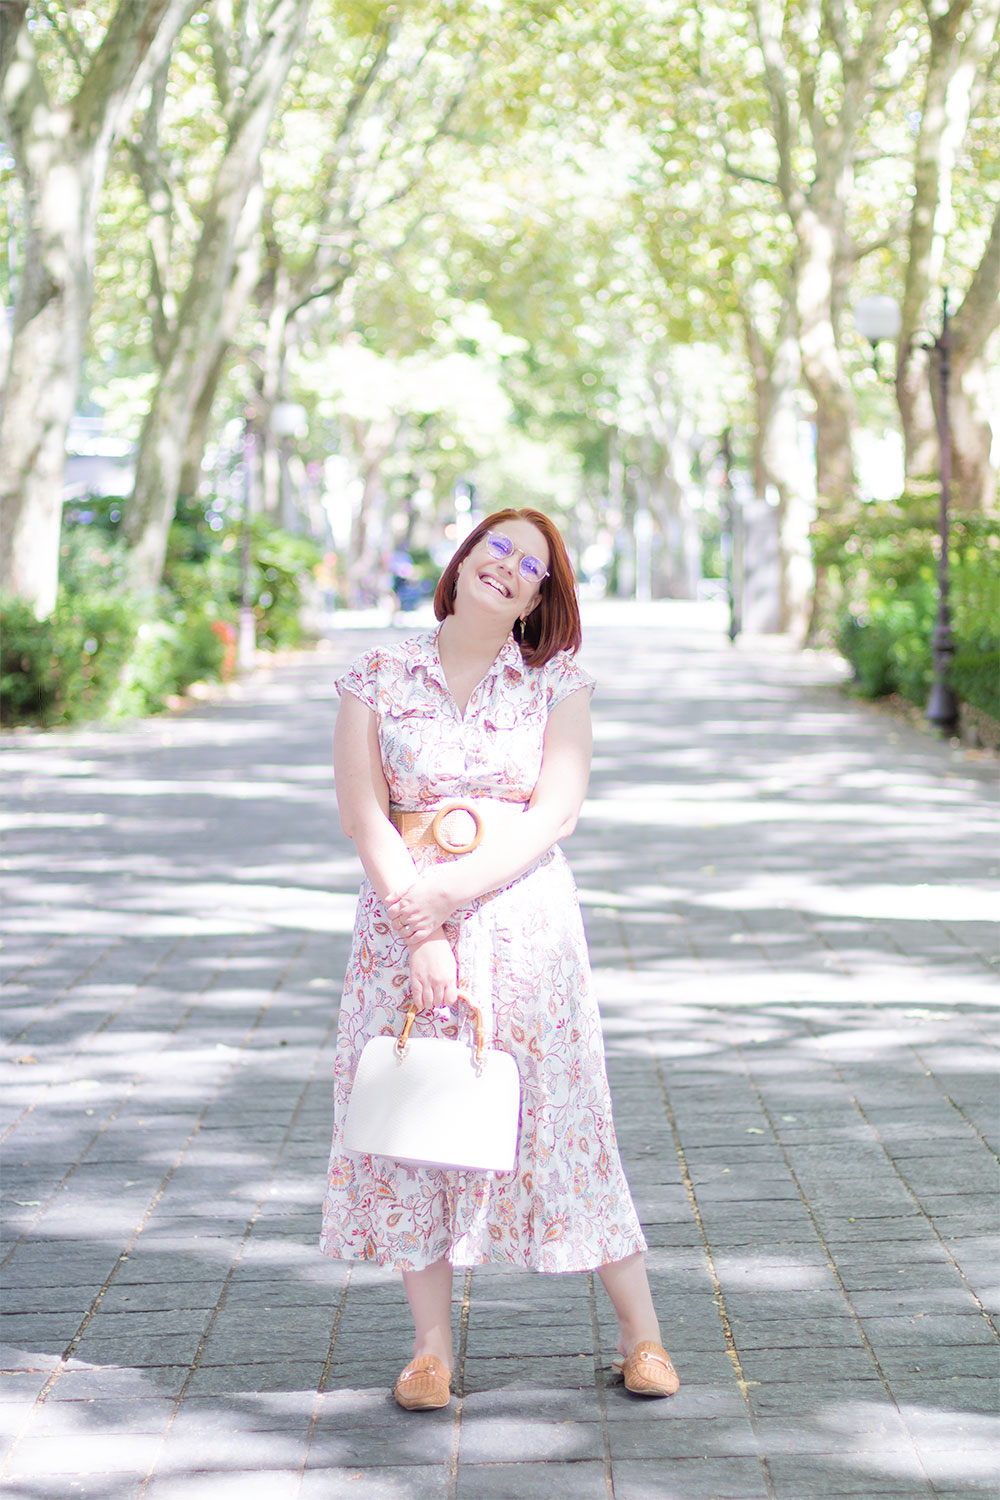 Au milieu du boulevard de Tours ensoleillée, en robe chemise longue fleurie et un sac beige dans les mains, avec le sourire